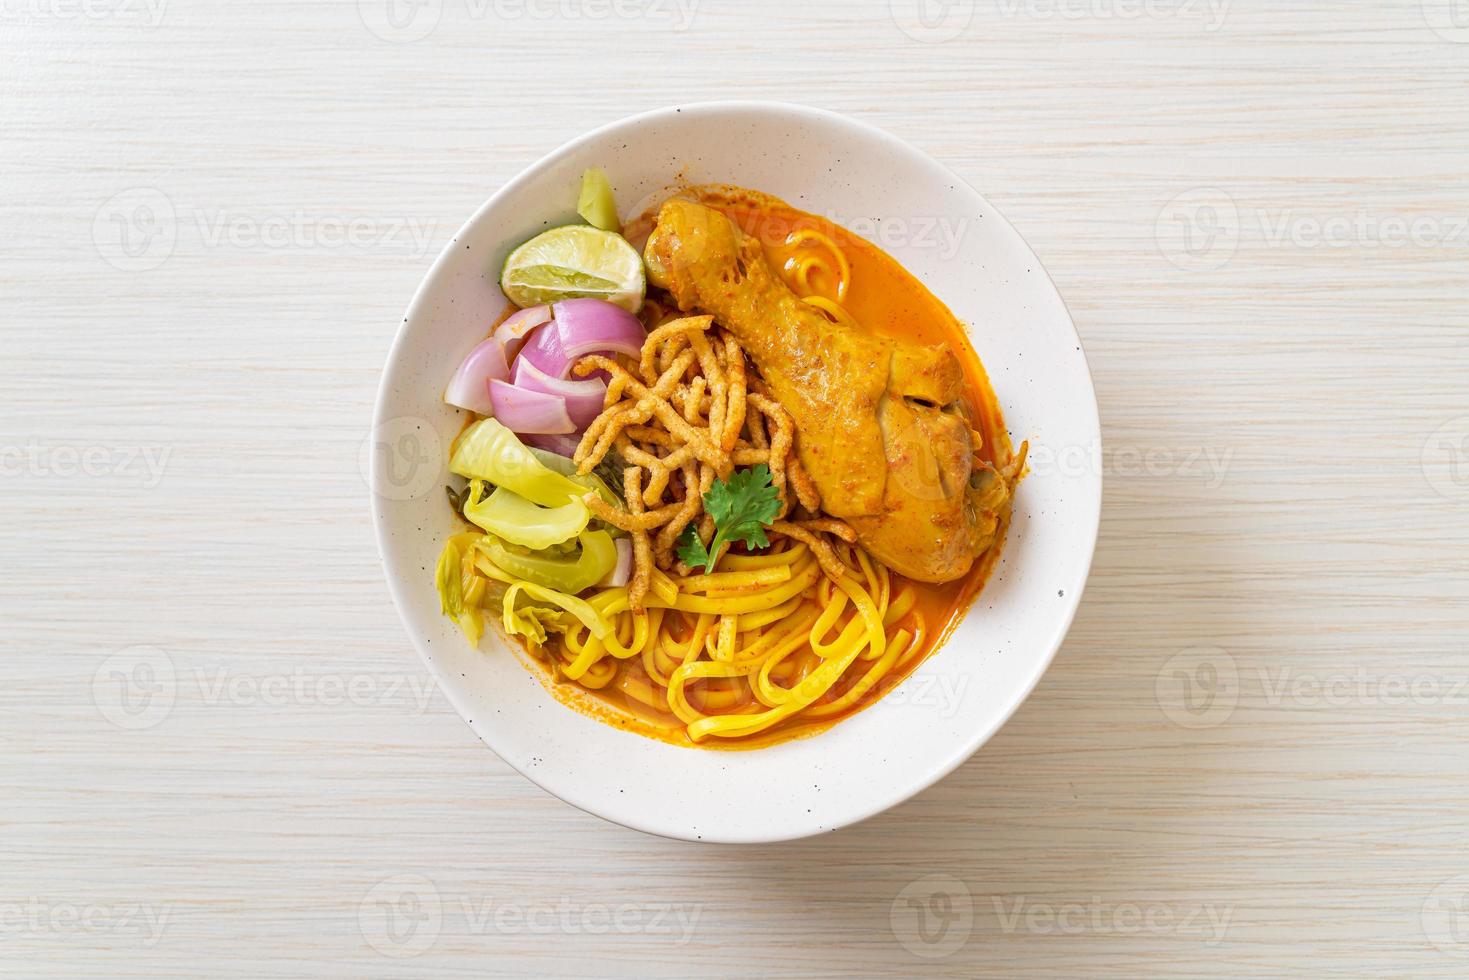 norra thailändska nudel curry soppa med kyckling foto